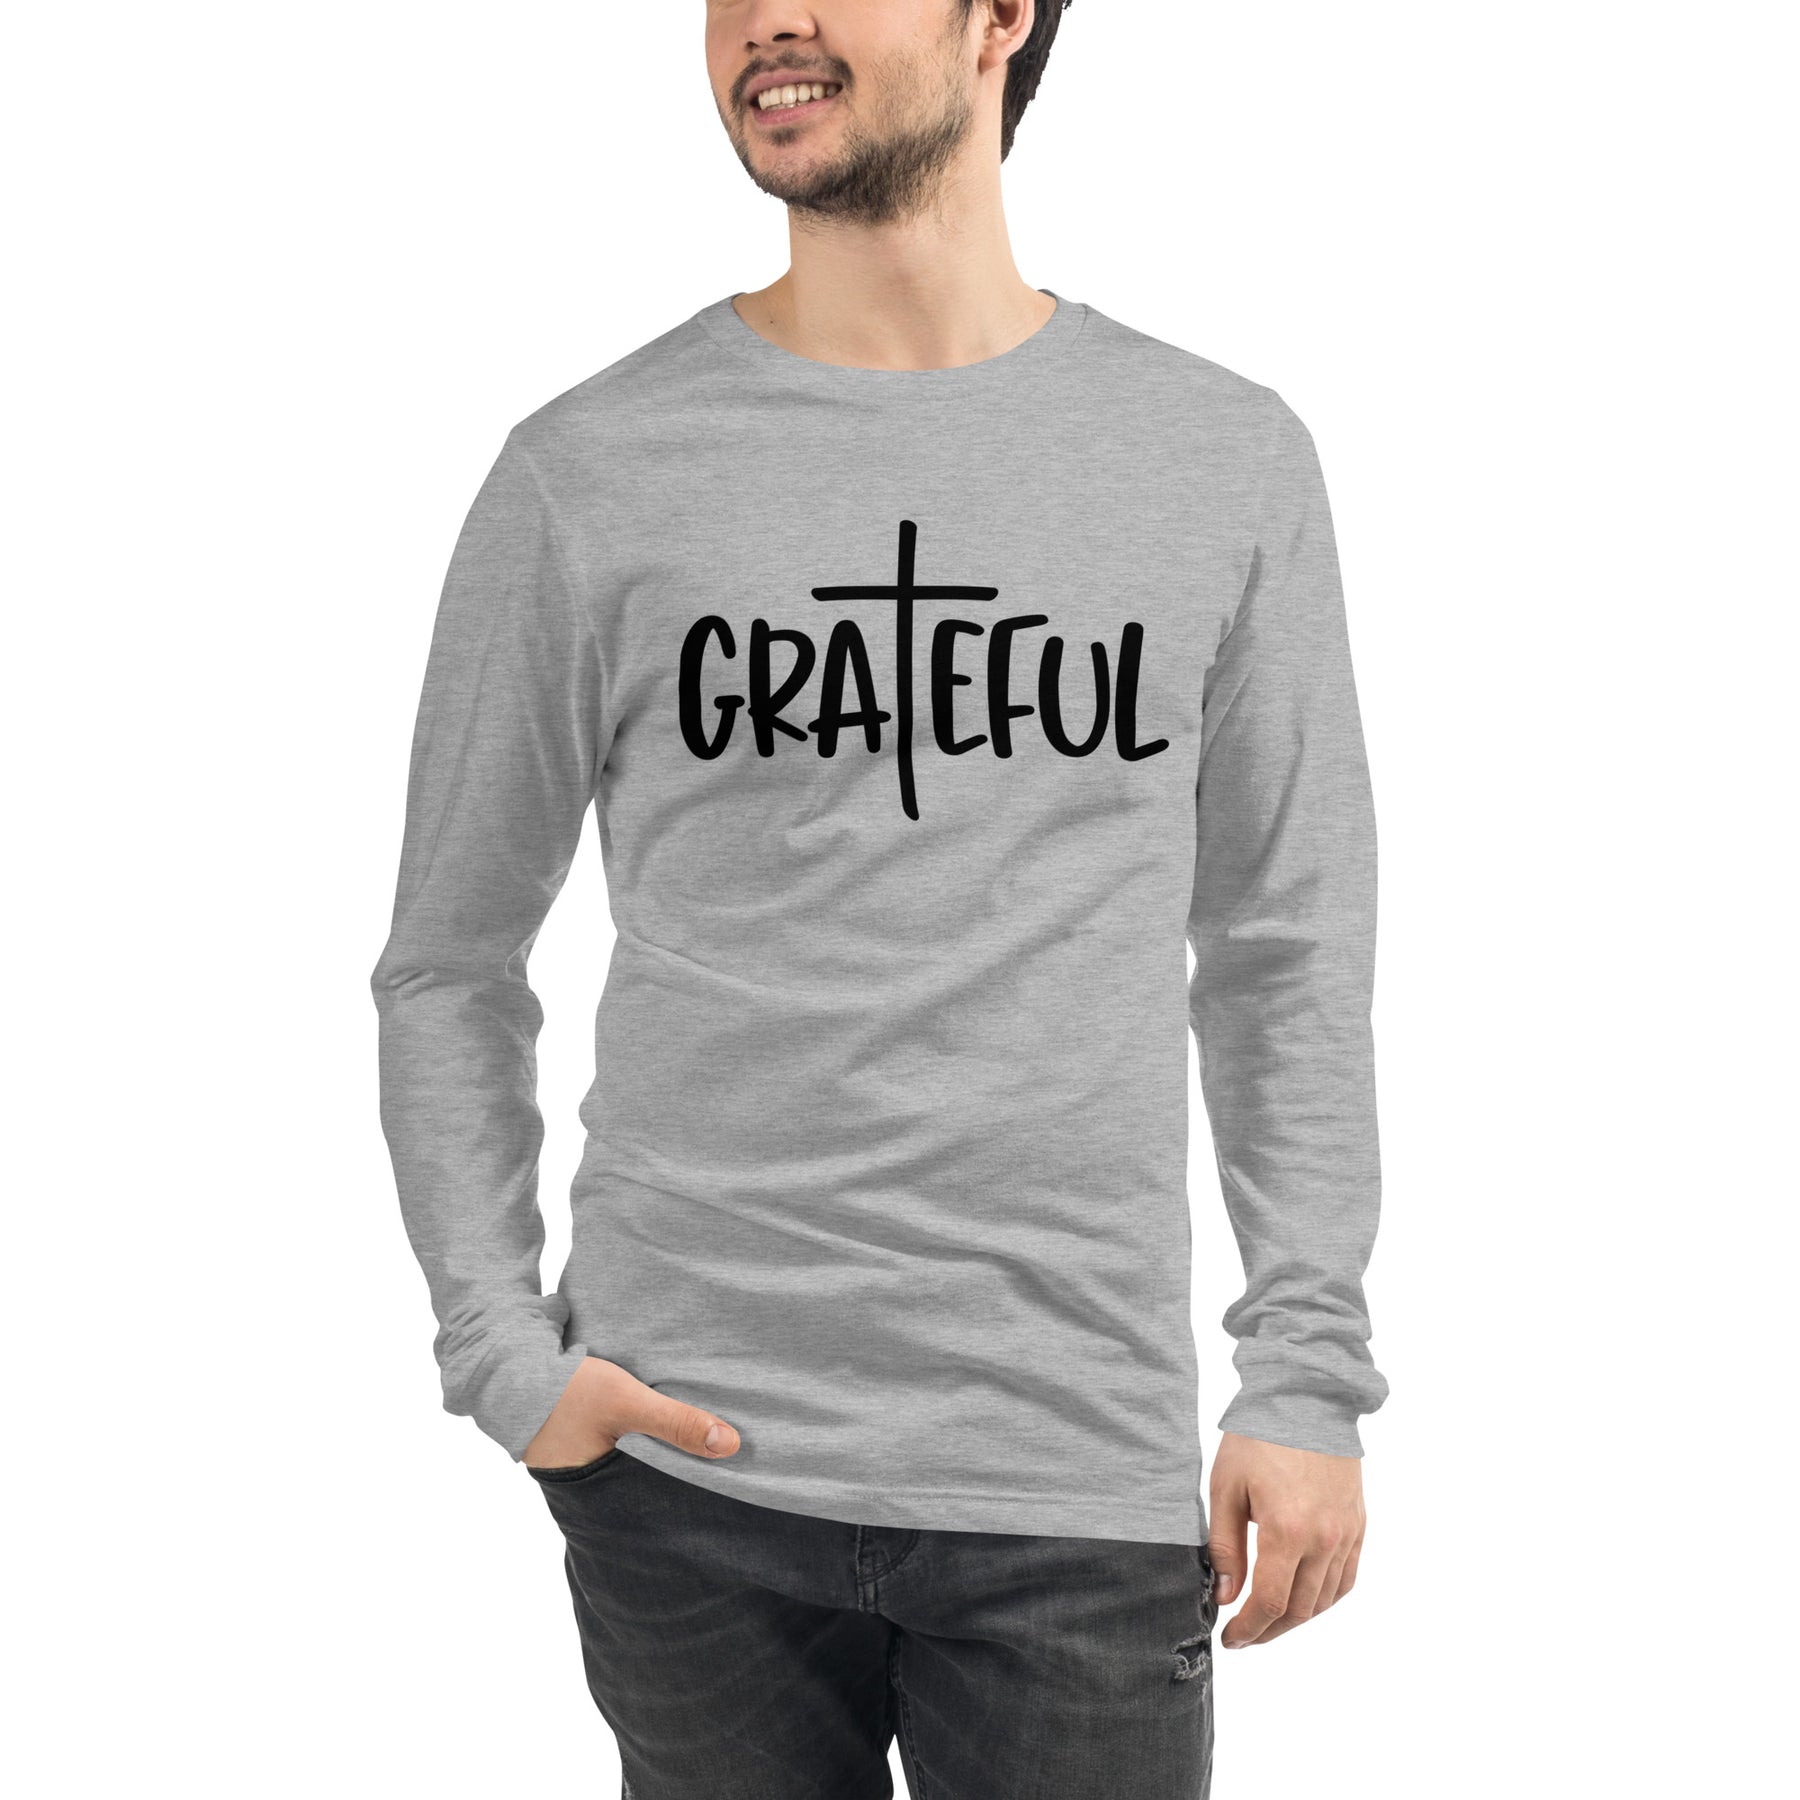 Grateful - Men's Long Sleeve T-Shirt